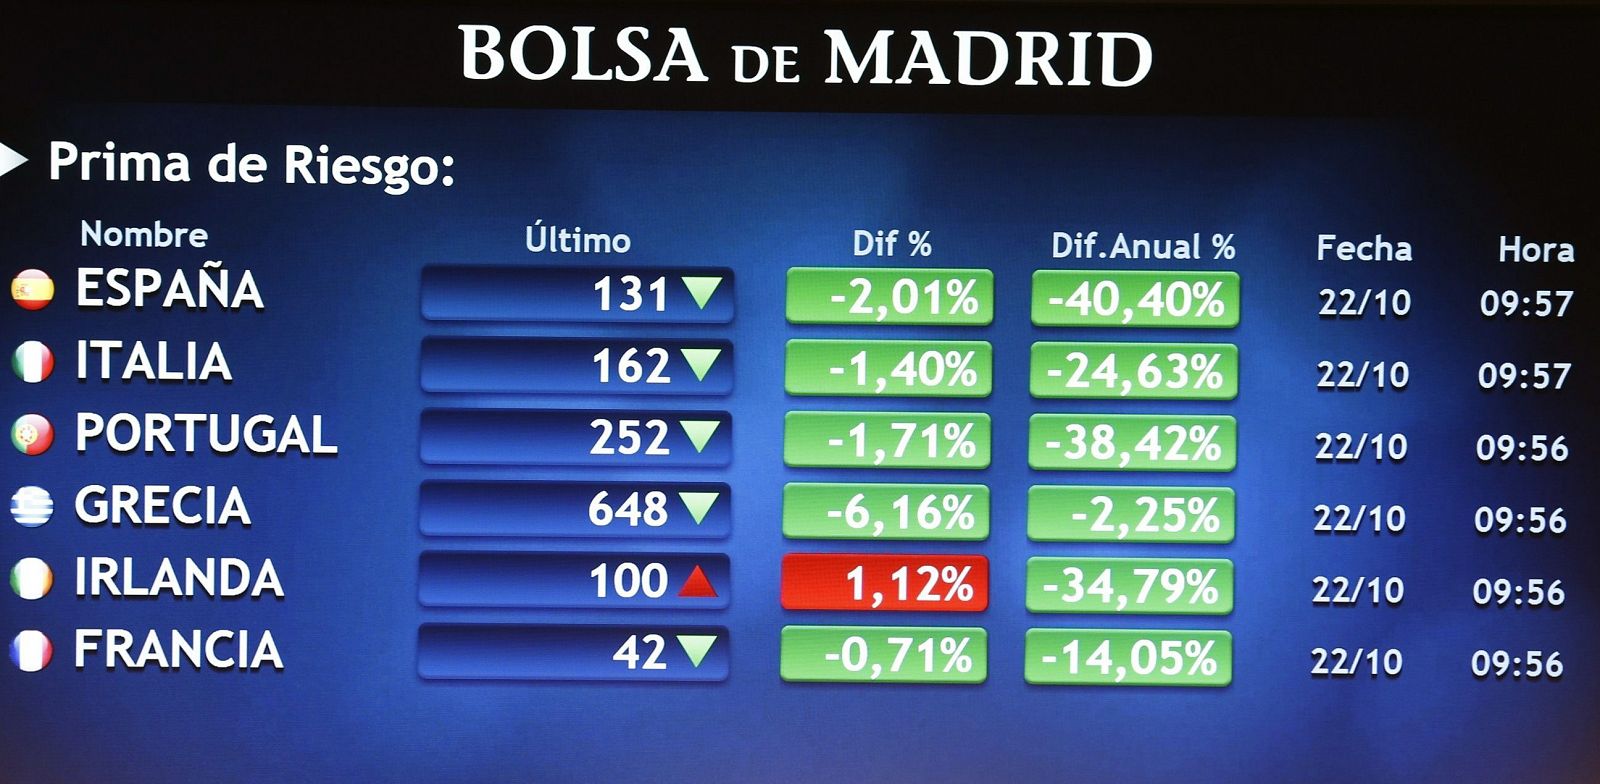 Panel en la Bolsa de Madrid que muestra las primas de riesgo de los países de la zona euro